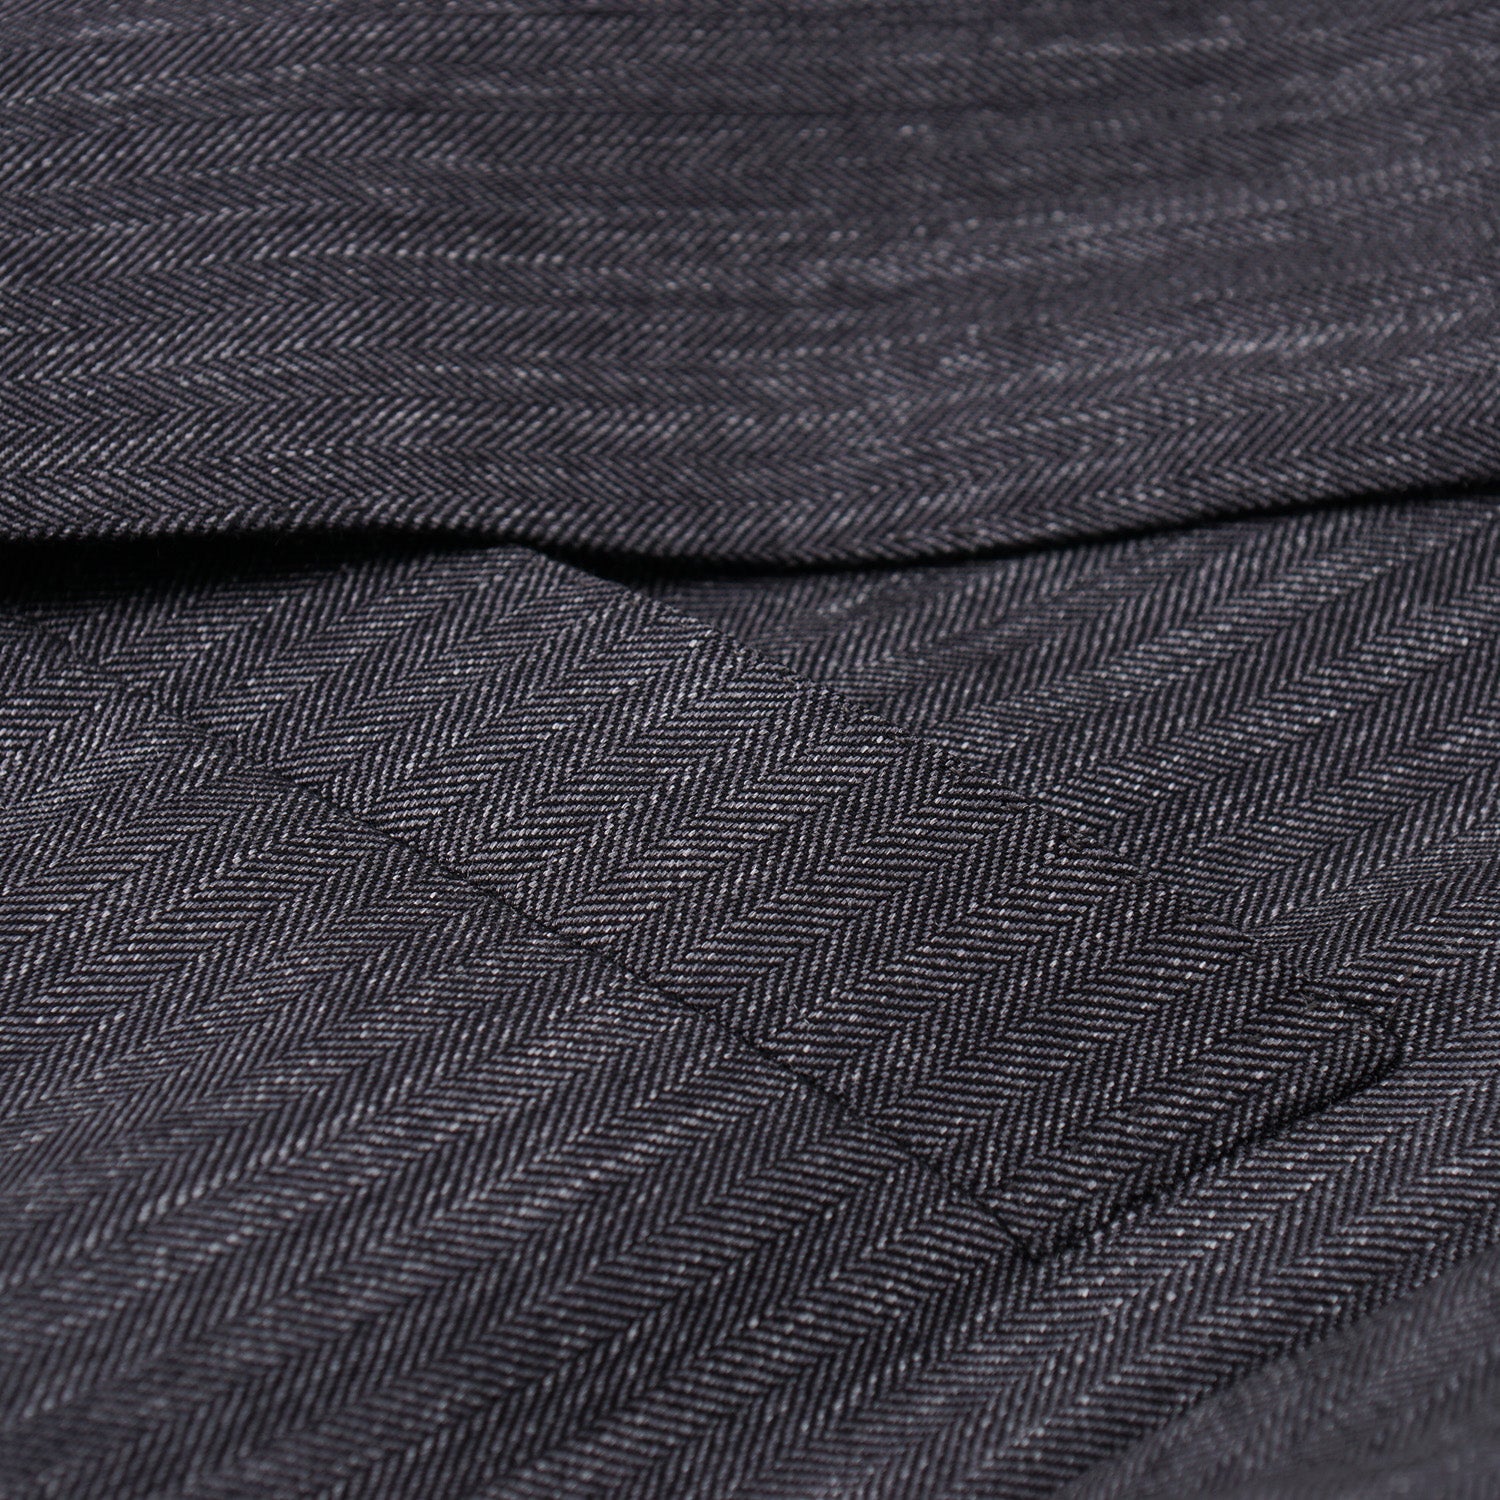 Ermenegildo Zegna Wool-Silk-Linen Sport Coat - Top Shelf Apparel